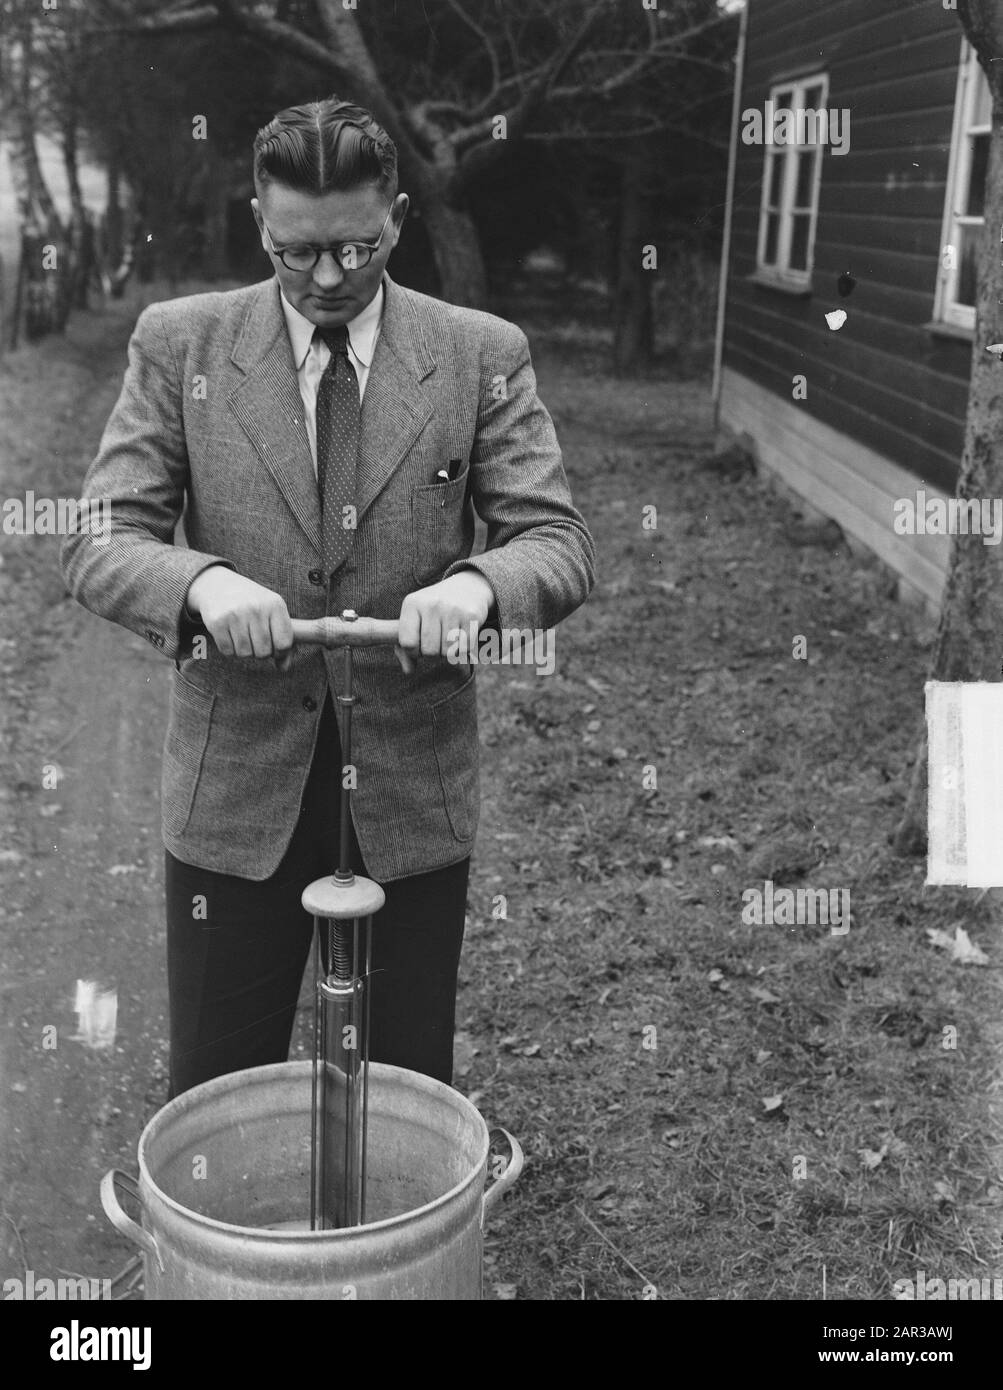 E. Koose du hameau de Joppe (près de Gorssel) a inventé un appareil avec lequel un linge normal peut être fait en 5 minutes. L'utilisation de cette solution coûte moins de savon et moins d'effort. Cette machine, qui ressemble à une pompe à vélo, n'est plus battue par l'eau savonneuse, mais le savon est battu par la cire. L'inventeur avec la machine à laver à pompe Date: 30 janvier 1951 lieu: Gueldre, Joppe mots clés: Ménage, inventeurs, inventions, lave-linge Nom: Cours, E. Banque D'Images